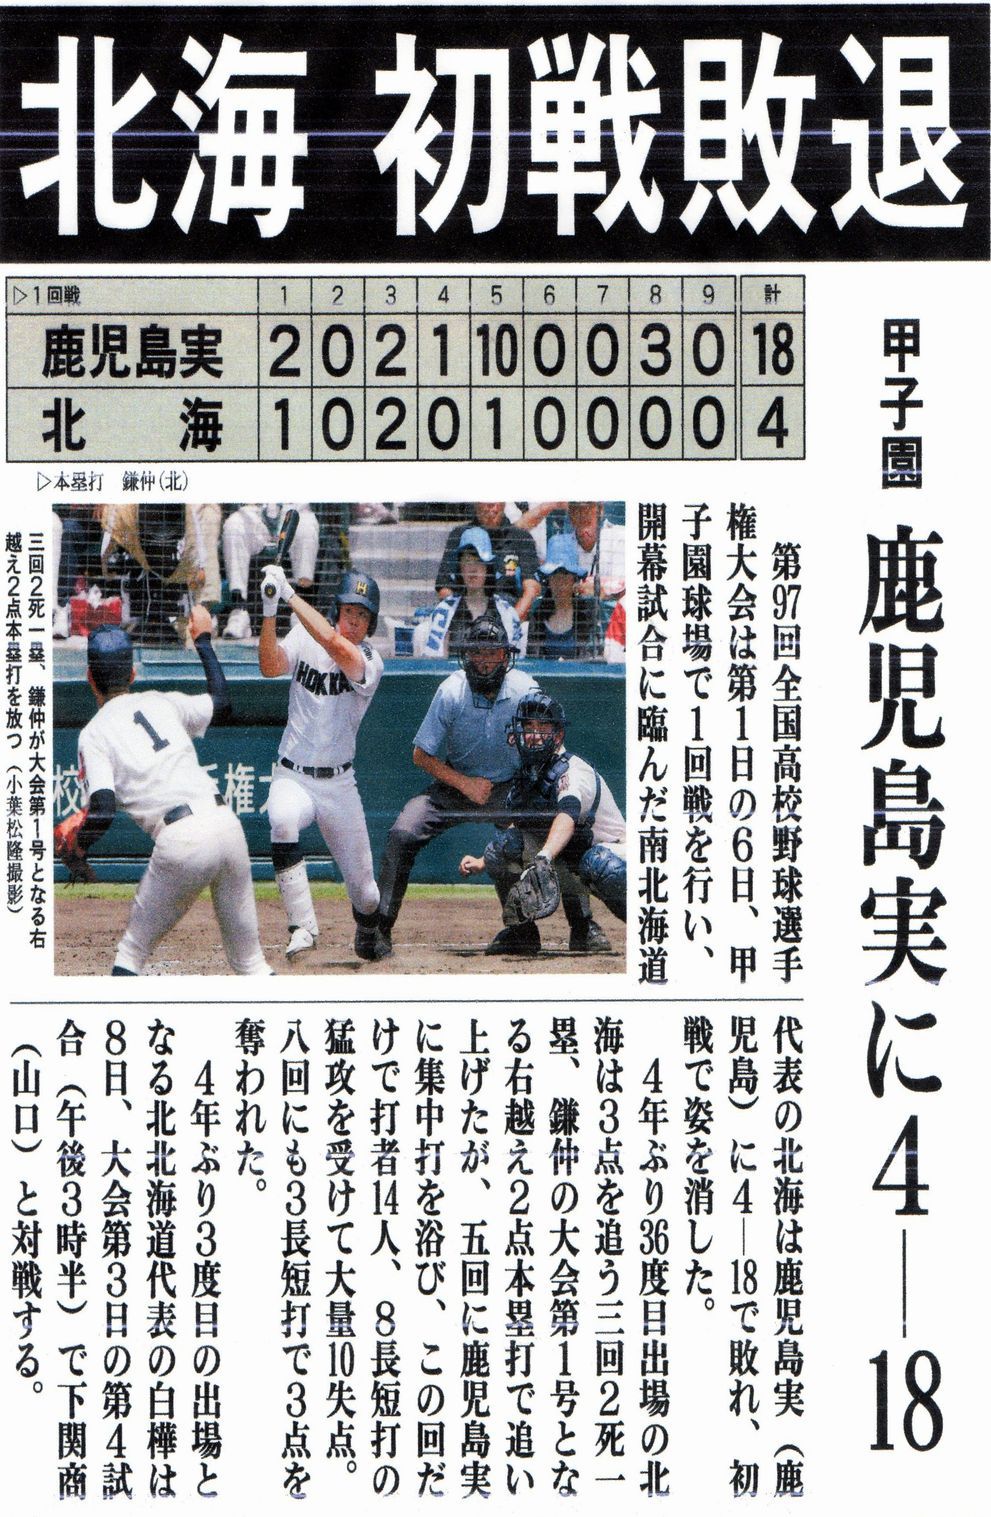 第98回全国高校野球選手権大会の南北海道代表校を決める決勝戦が行われ、今年も北海校が南北海道代表校となりました。